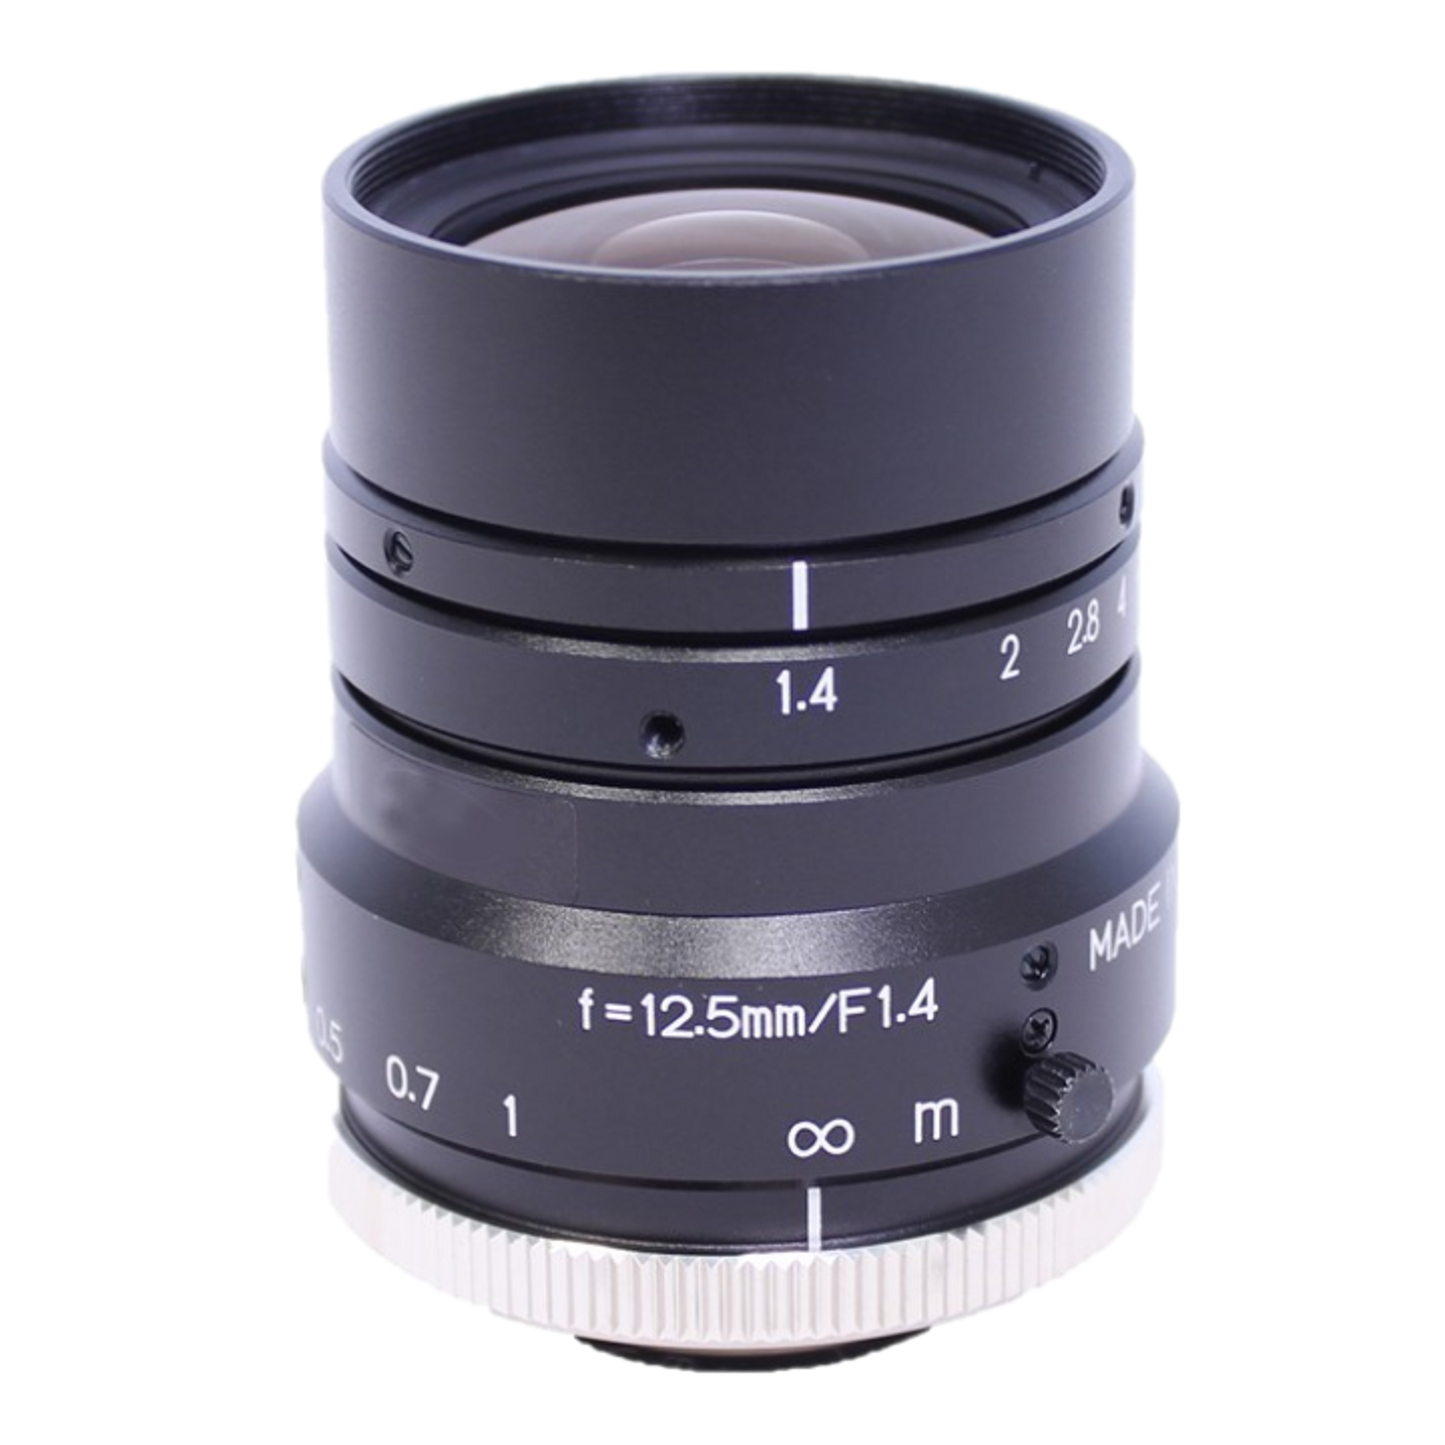 12.5mm Standard Lens